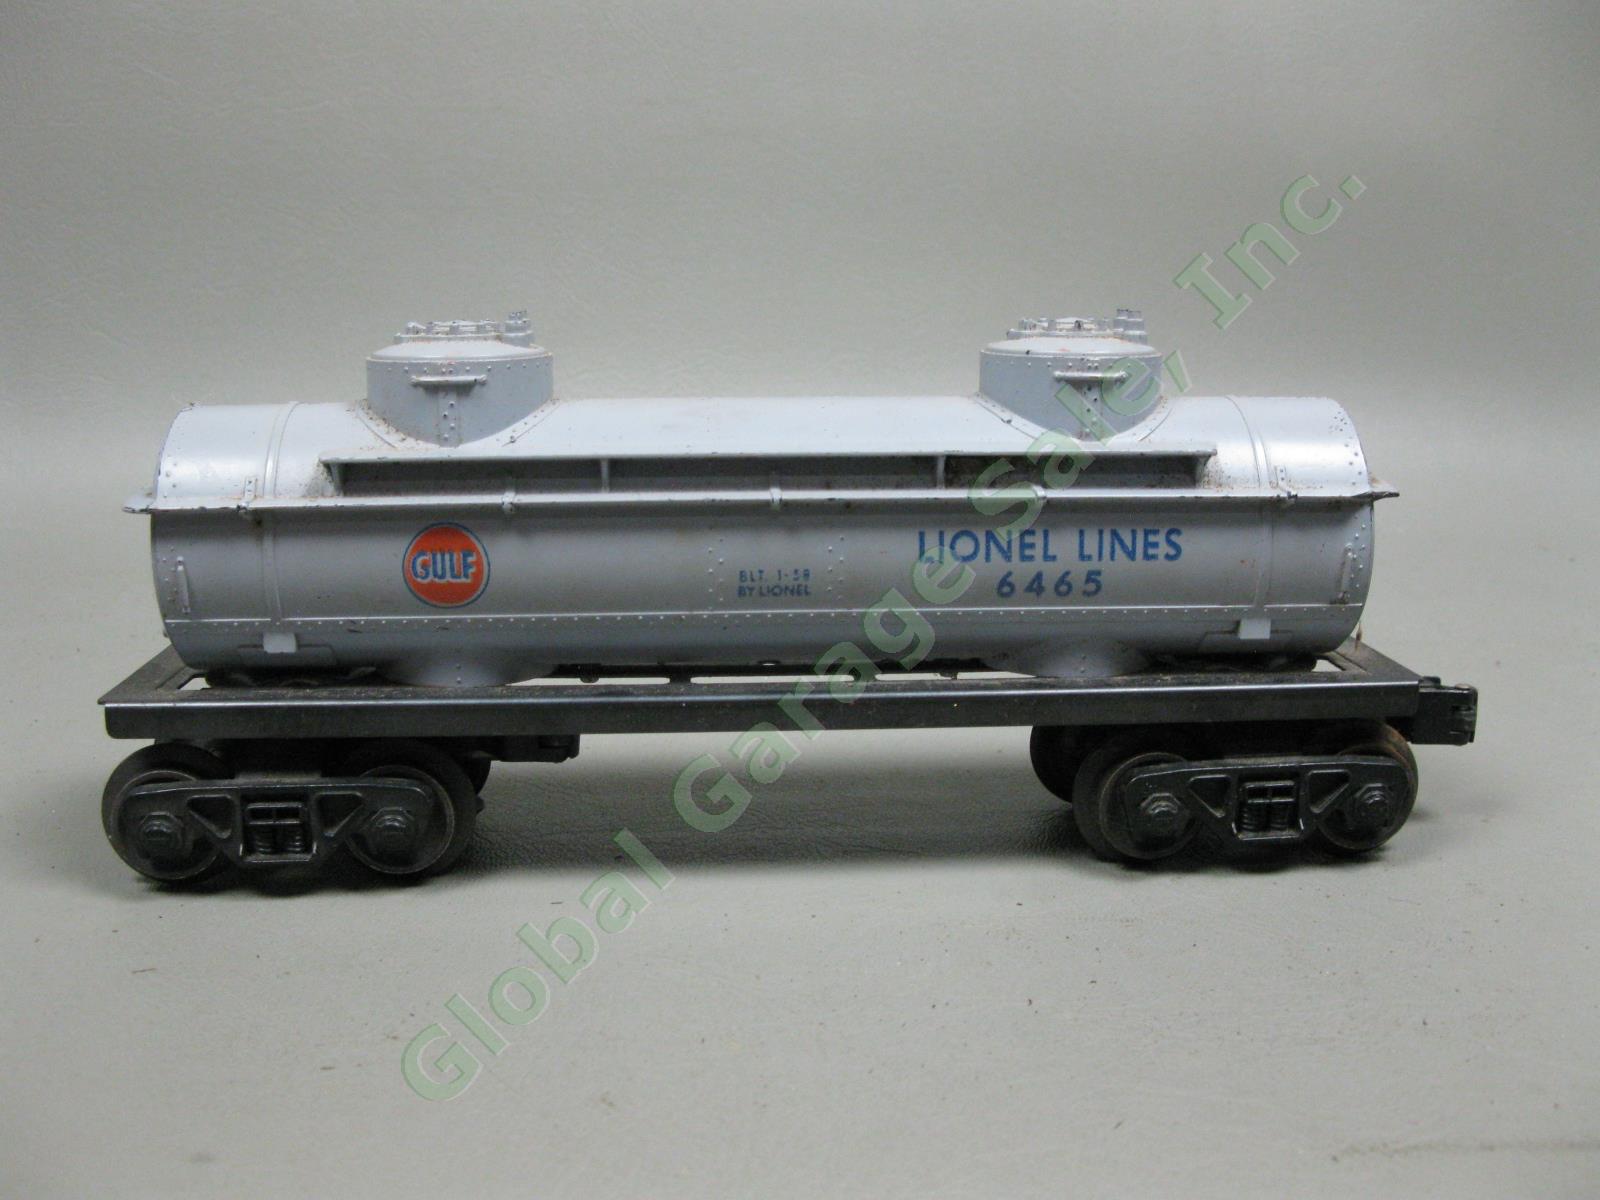 Vintage Lionel Lines/Marx O-Gauge Model Train Lot Tracks #6112 6424 6465 6801 NR 4